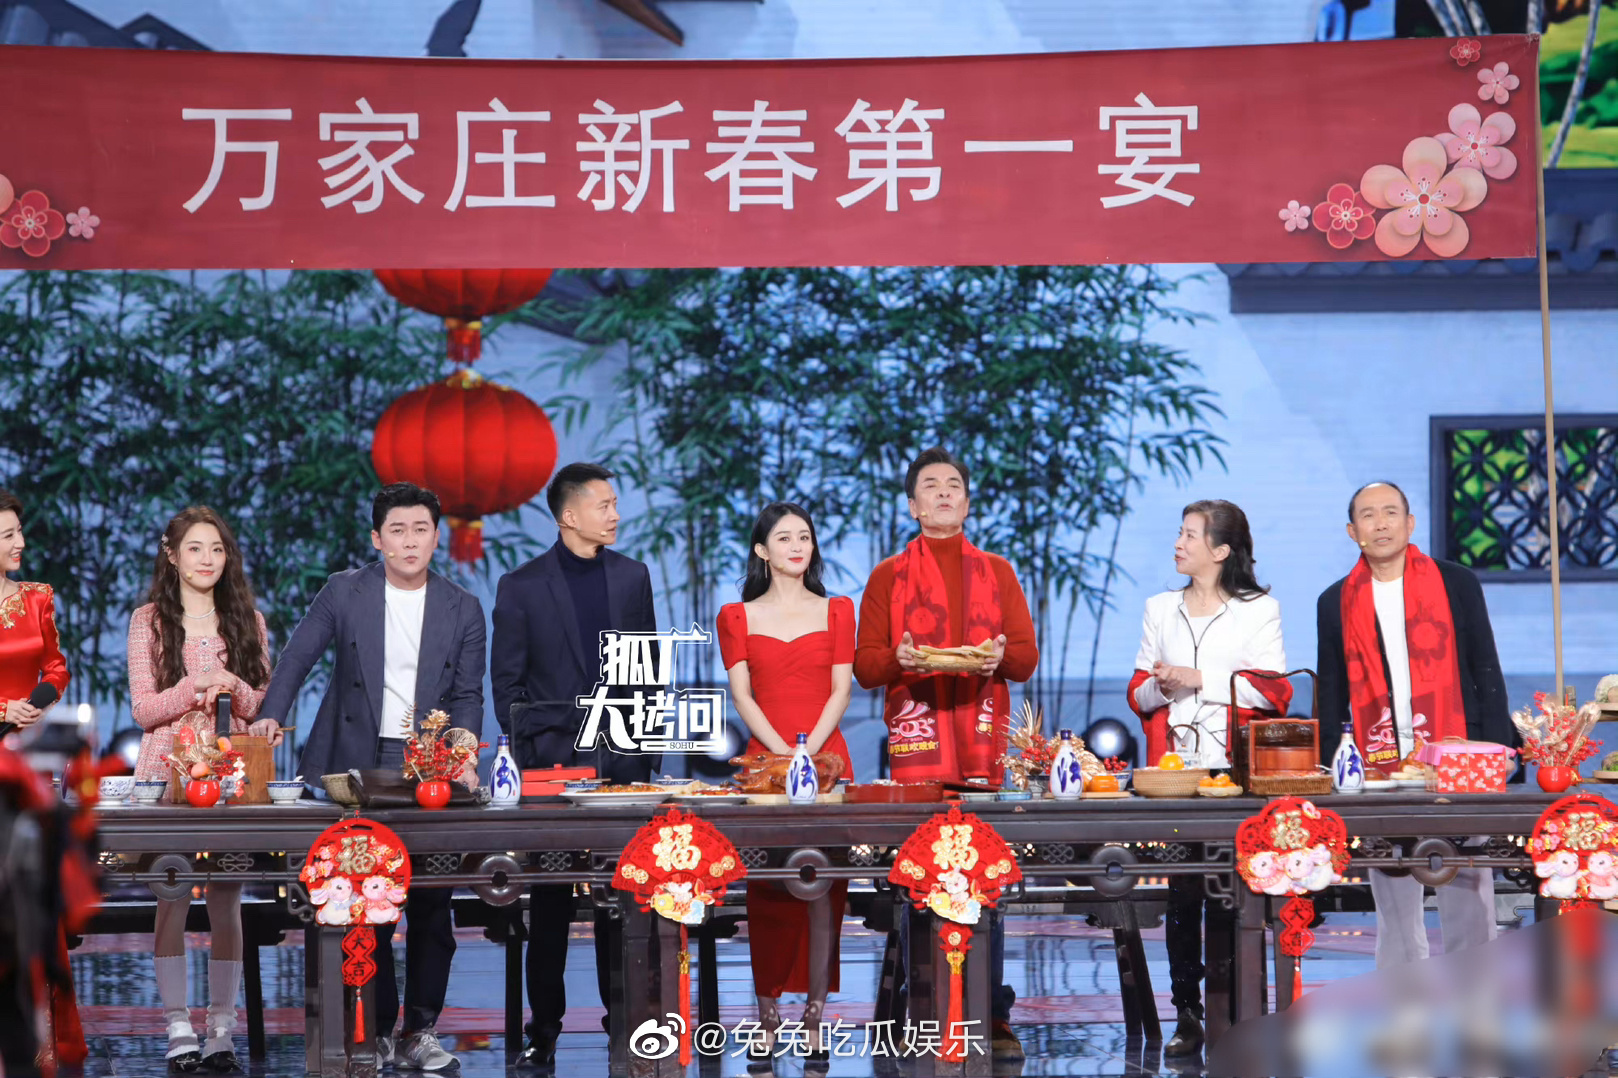 Loạt ảnh rực rỡ của Triệu Lệ Dĩnh trong buổi ghi hình Gala Xuân Vãn Bắc Kinh, hội ngộ cùng ekip Hạnh Phúc Đến Vạn Gia - Ảnh 5